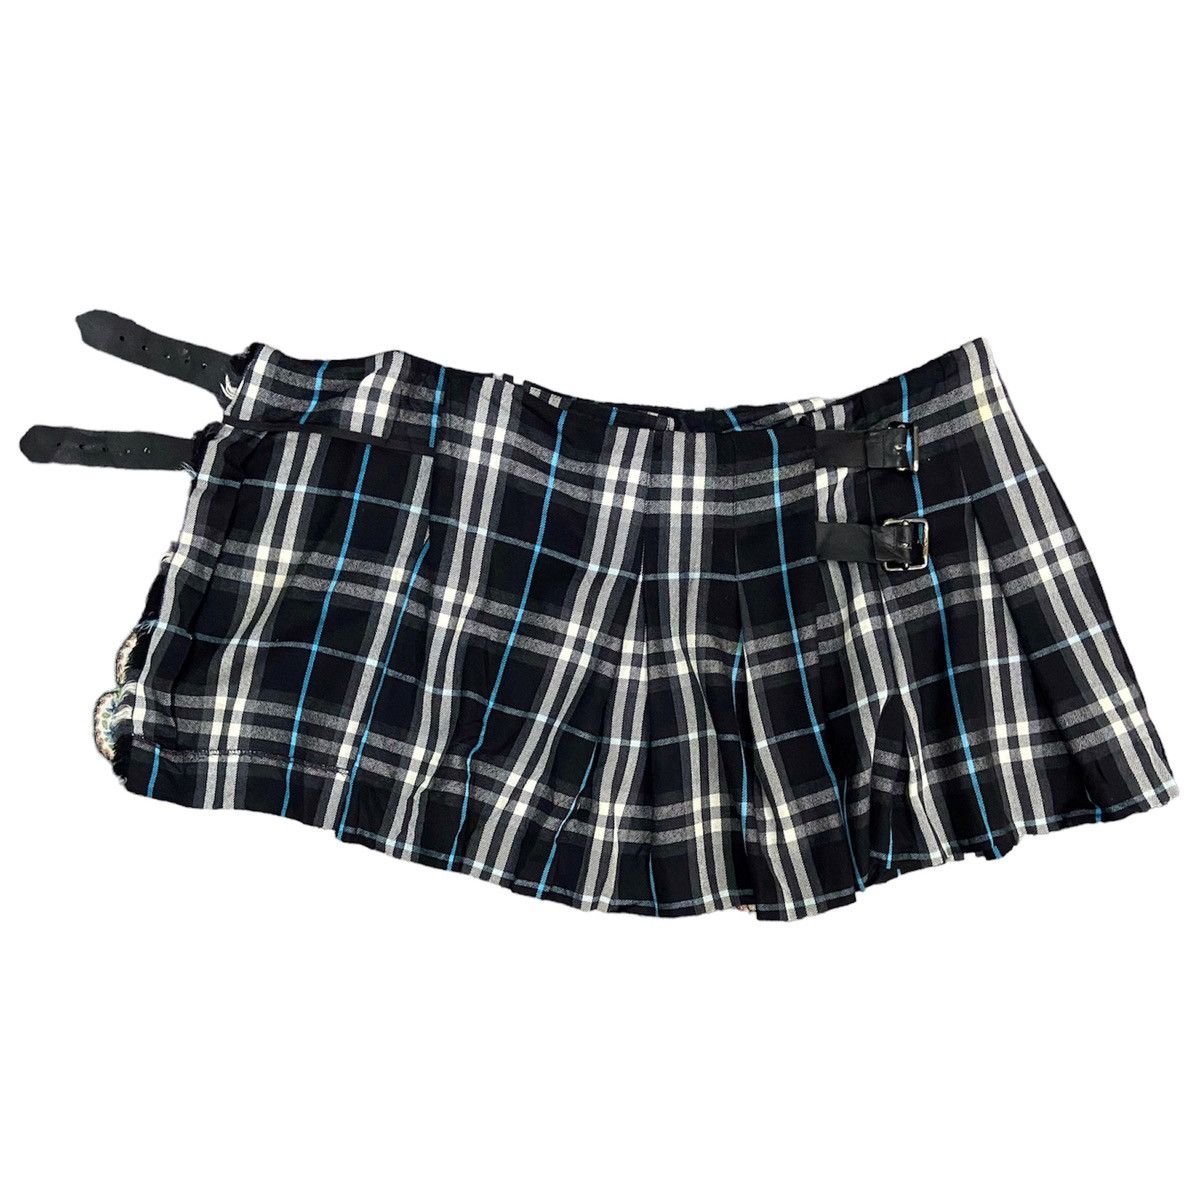 Burberry Nova Check Wrap Skirt - 2